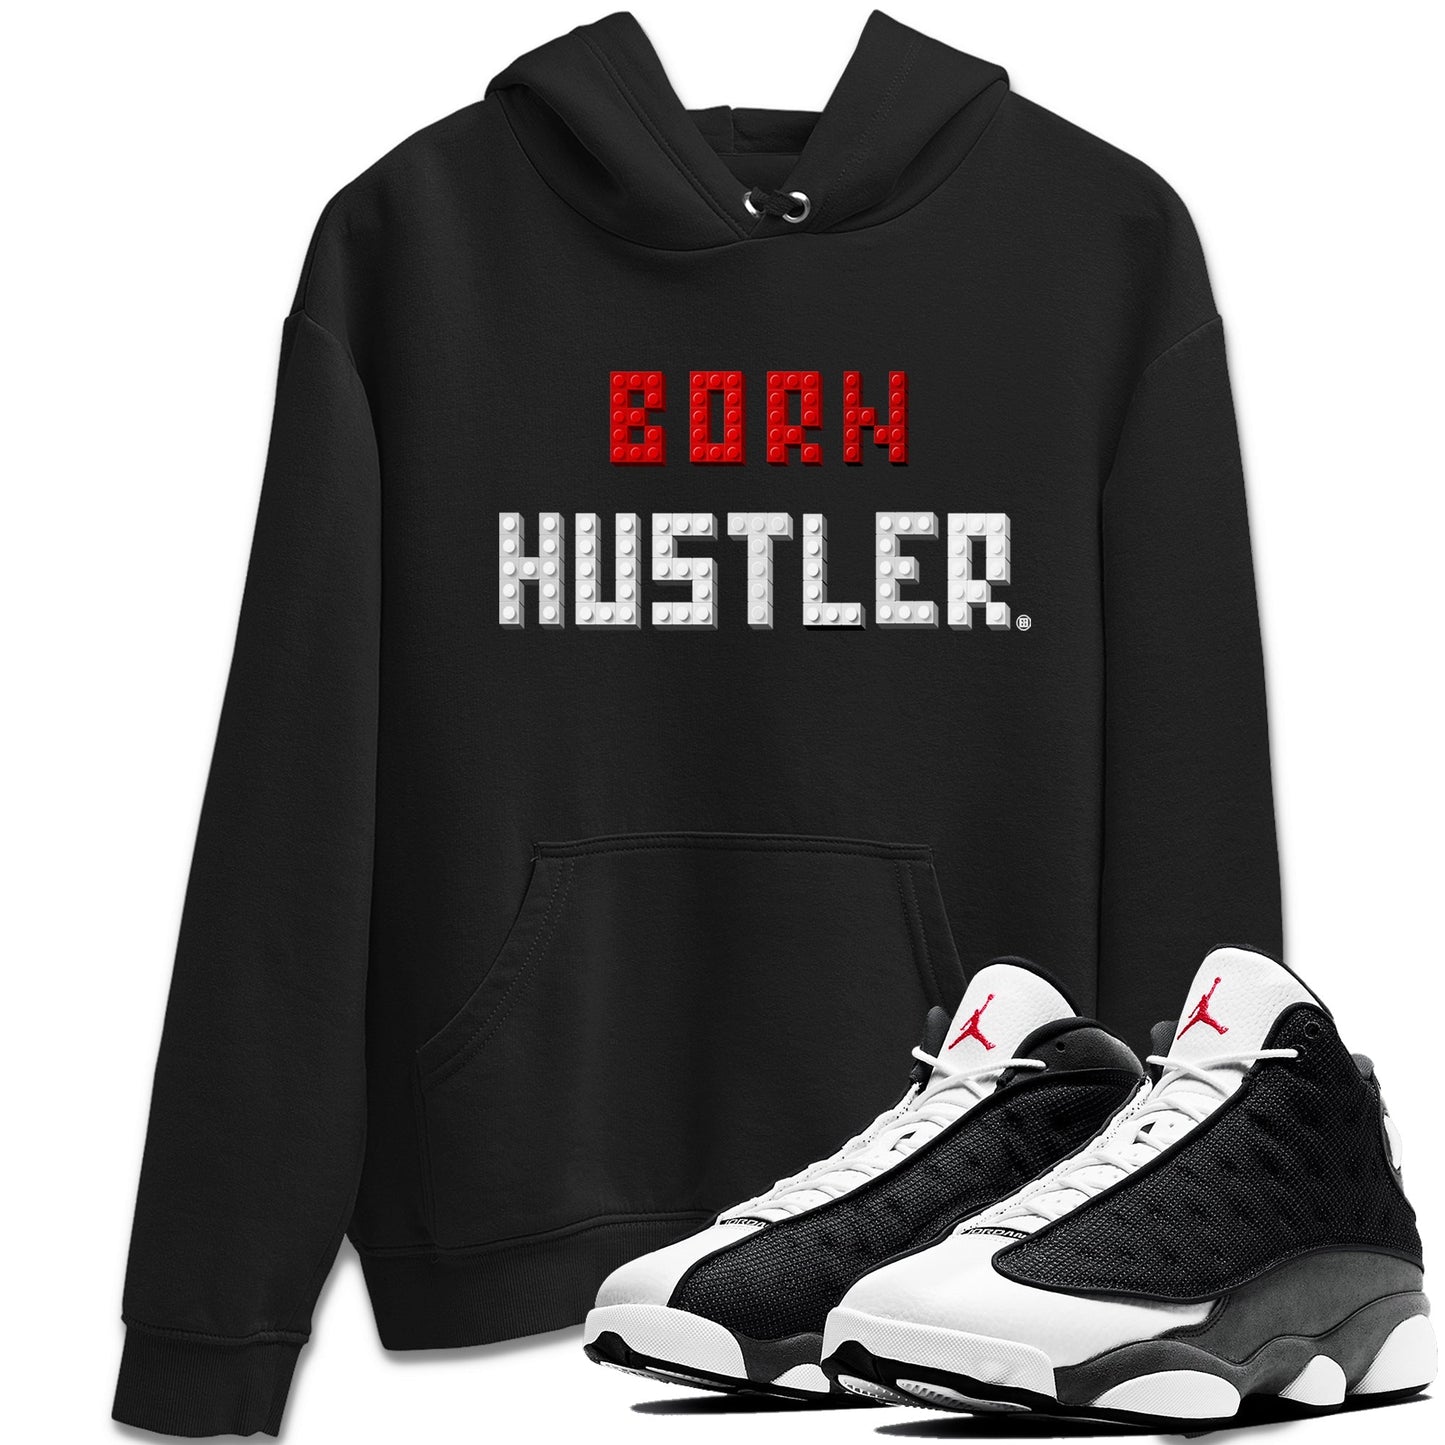 Air Jordan 13 Black Flint Sneaker Match Tees Brick Born Hustler t shirt Air Jordan 13 Retro Black Flint Sneaker Tees Unisex Shirts Black 1